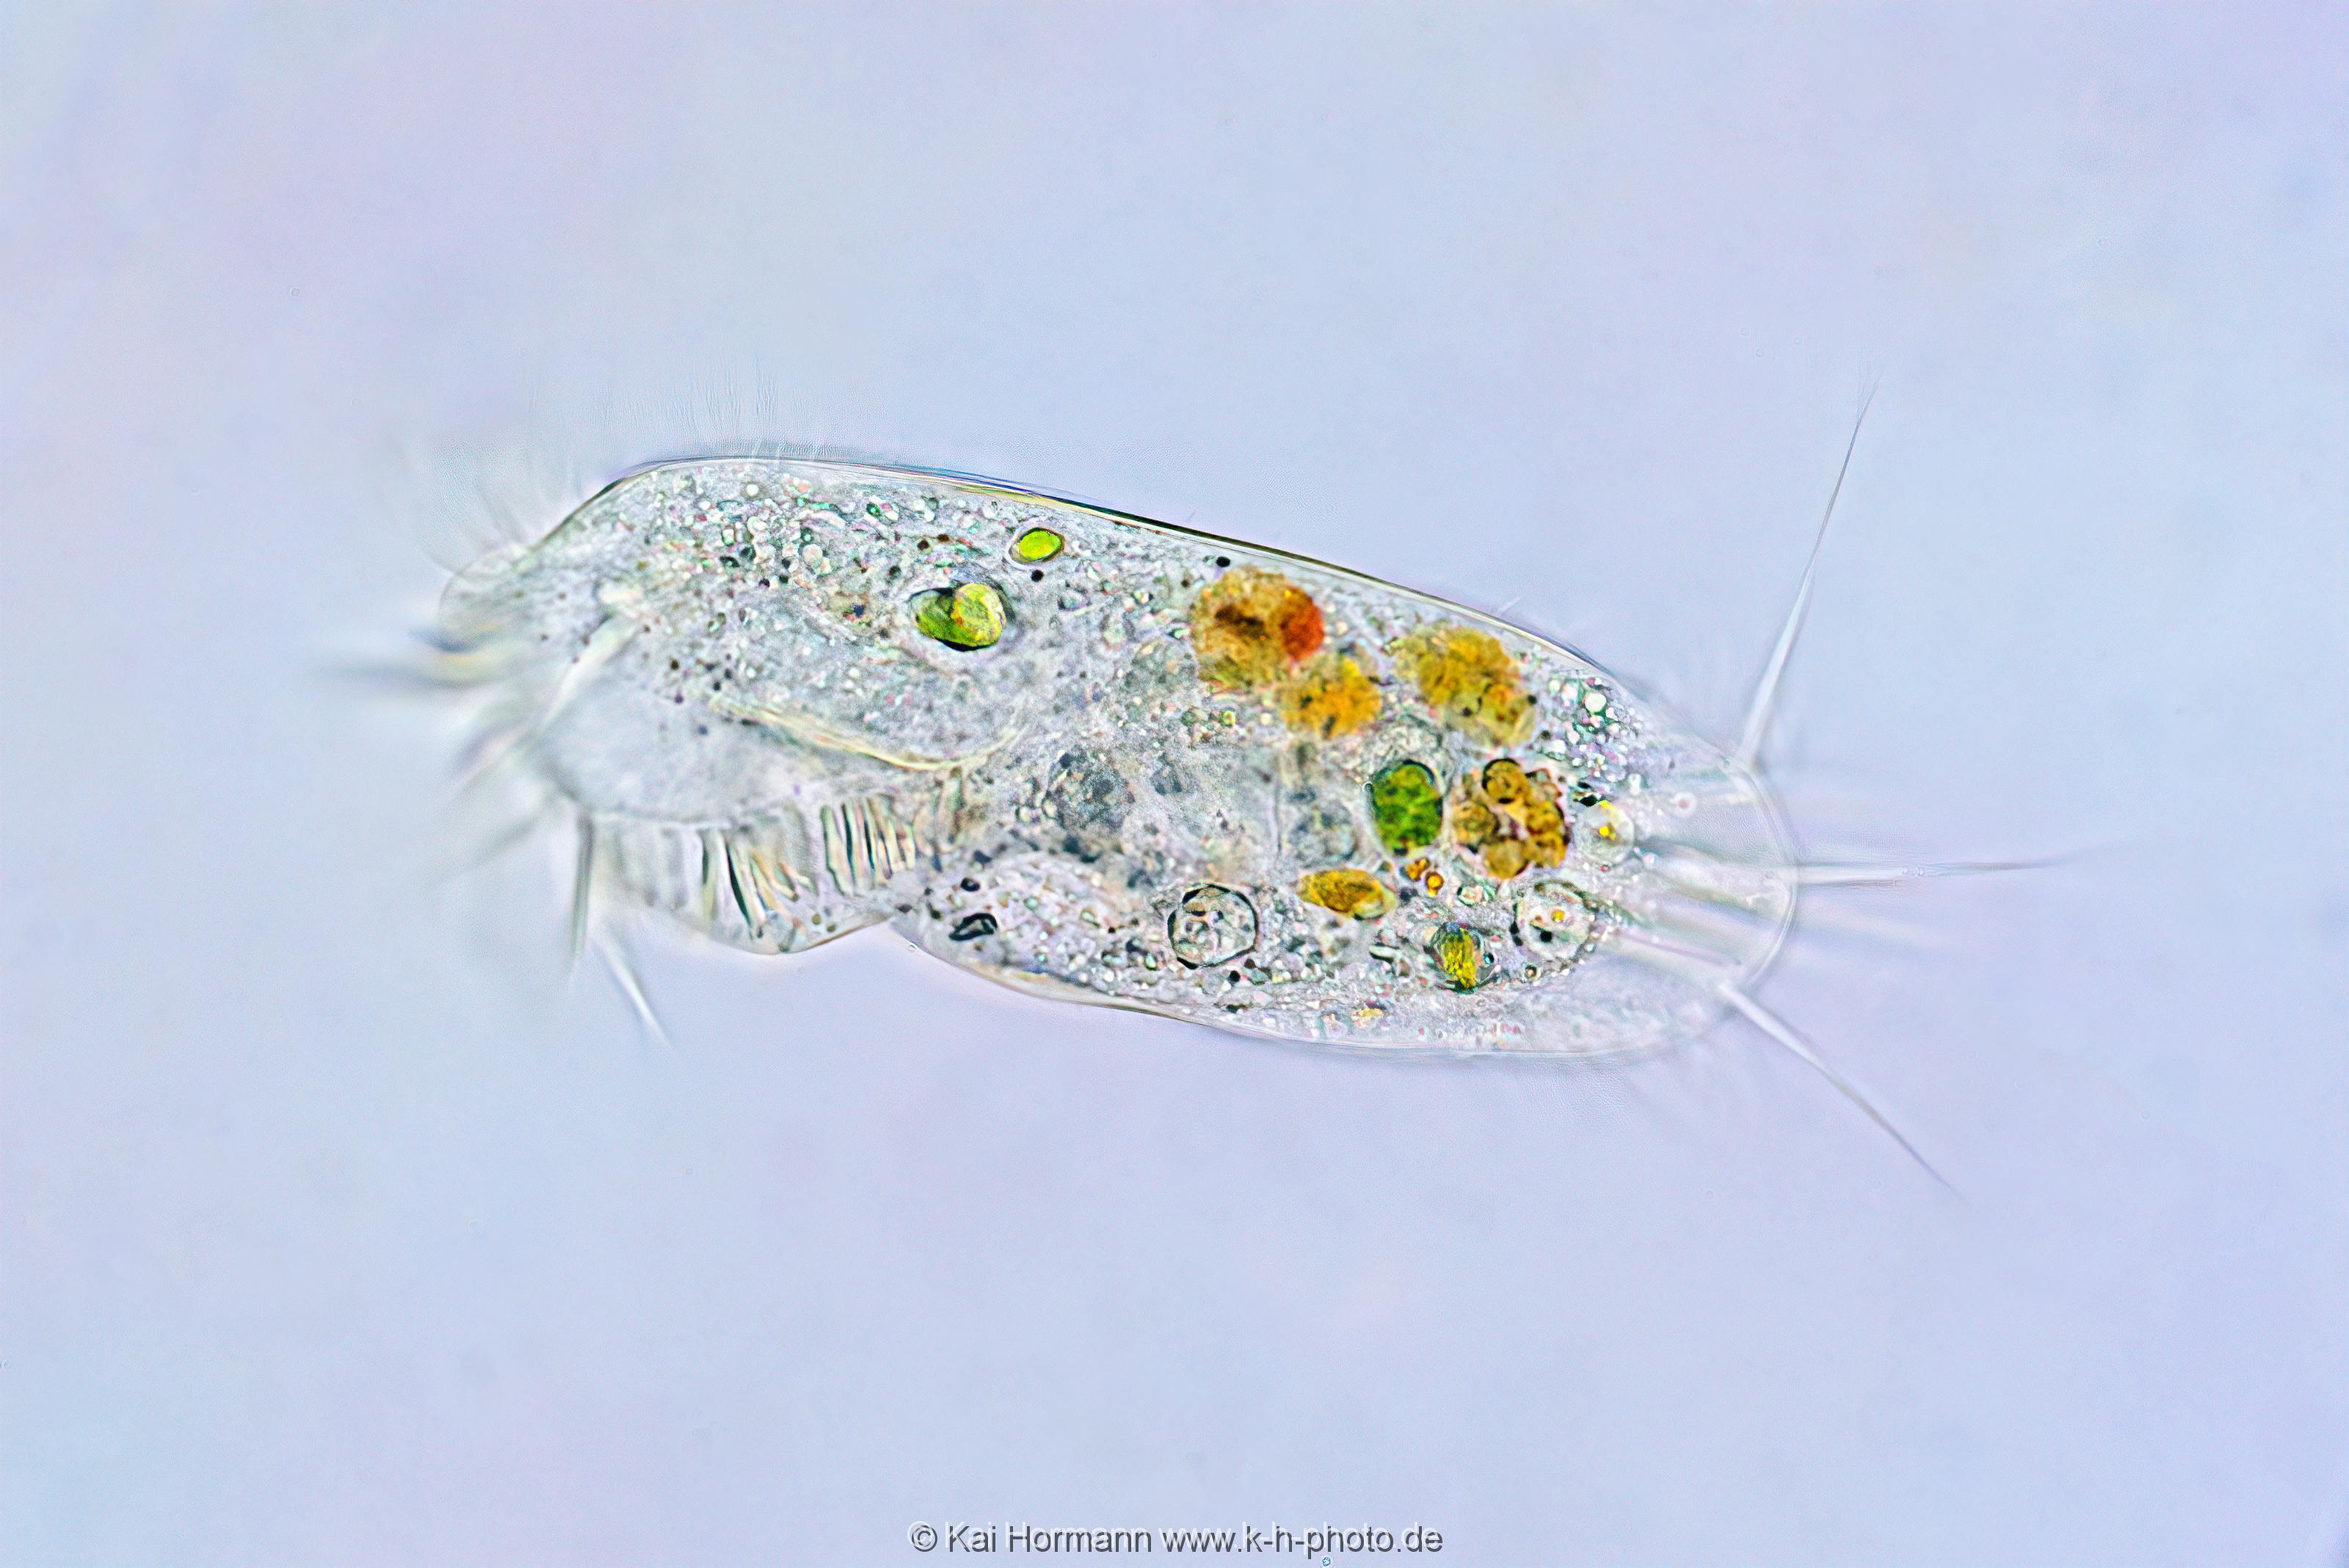 Waffentierchen (Draufsicht). Mikrofotografie: Mikroskopische Aufnahmen von Einzellern, Algen und Kleinstlebewesen.